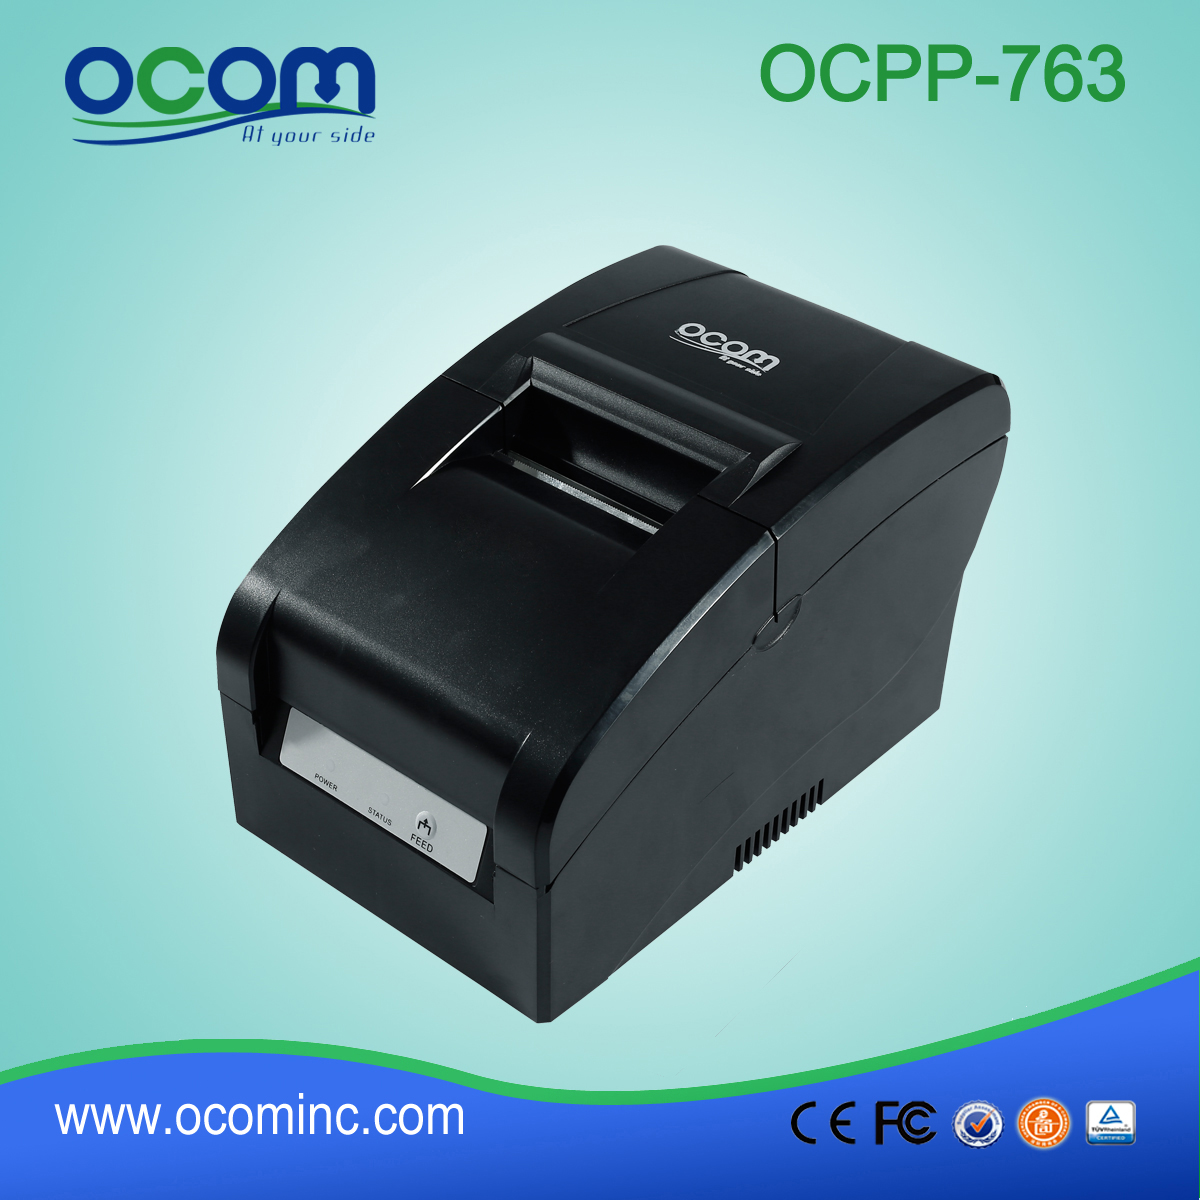 OCPP-763迷你冲击点阵打印机，76mm宽纸张尺寸，用于收款机